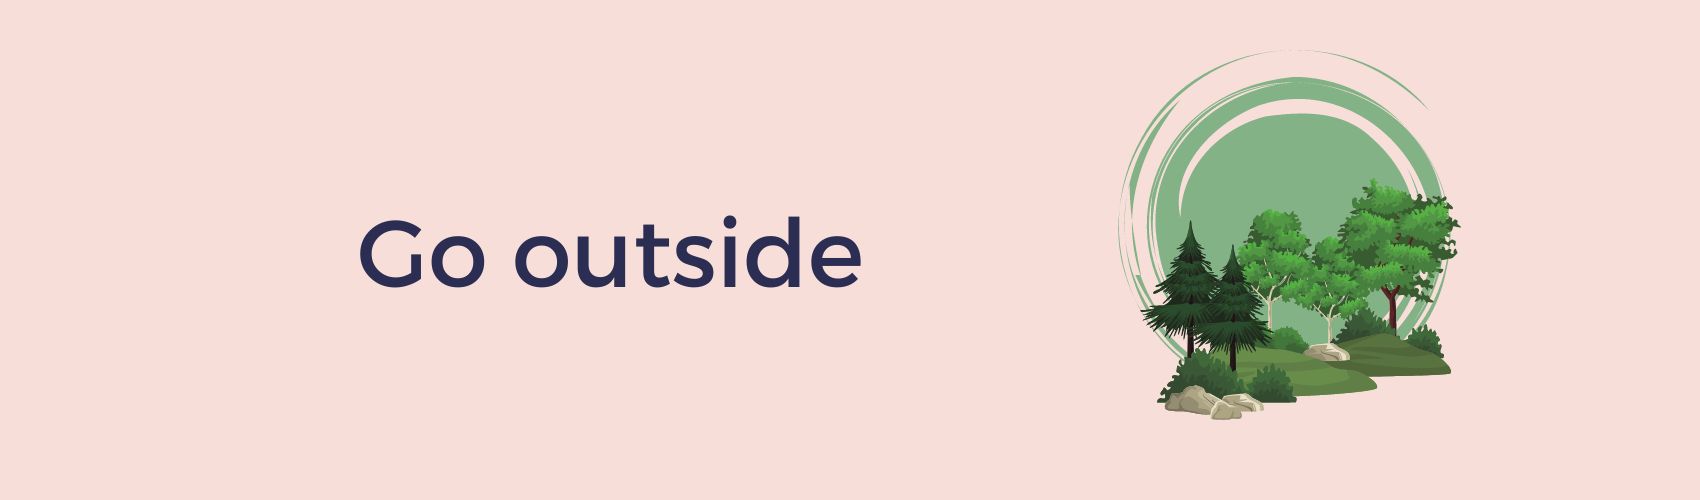 Go outside